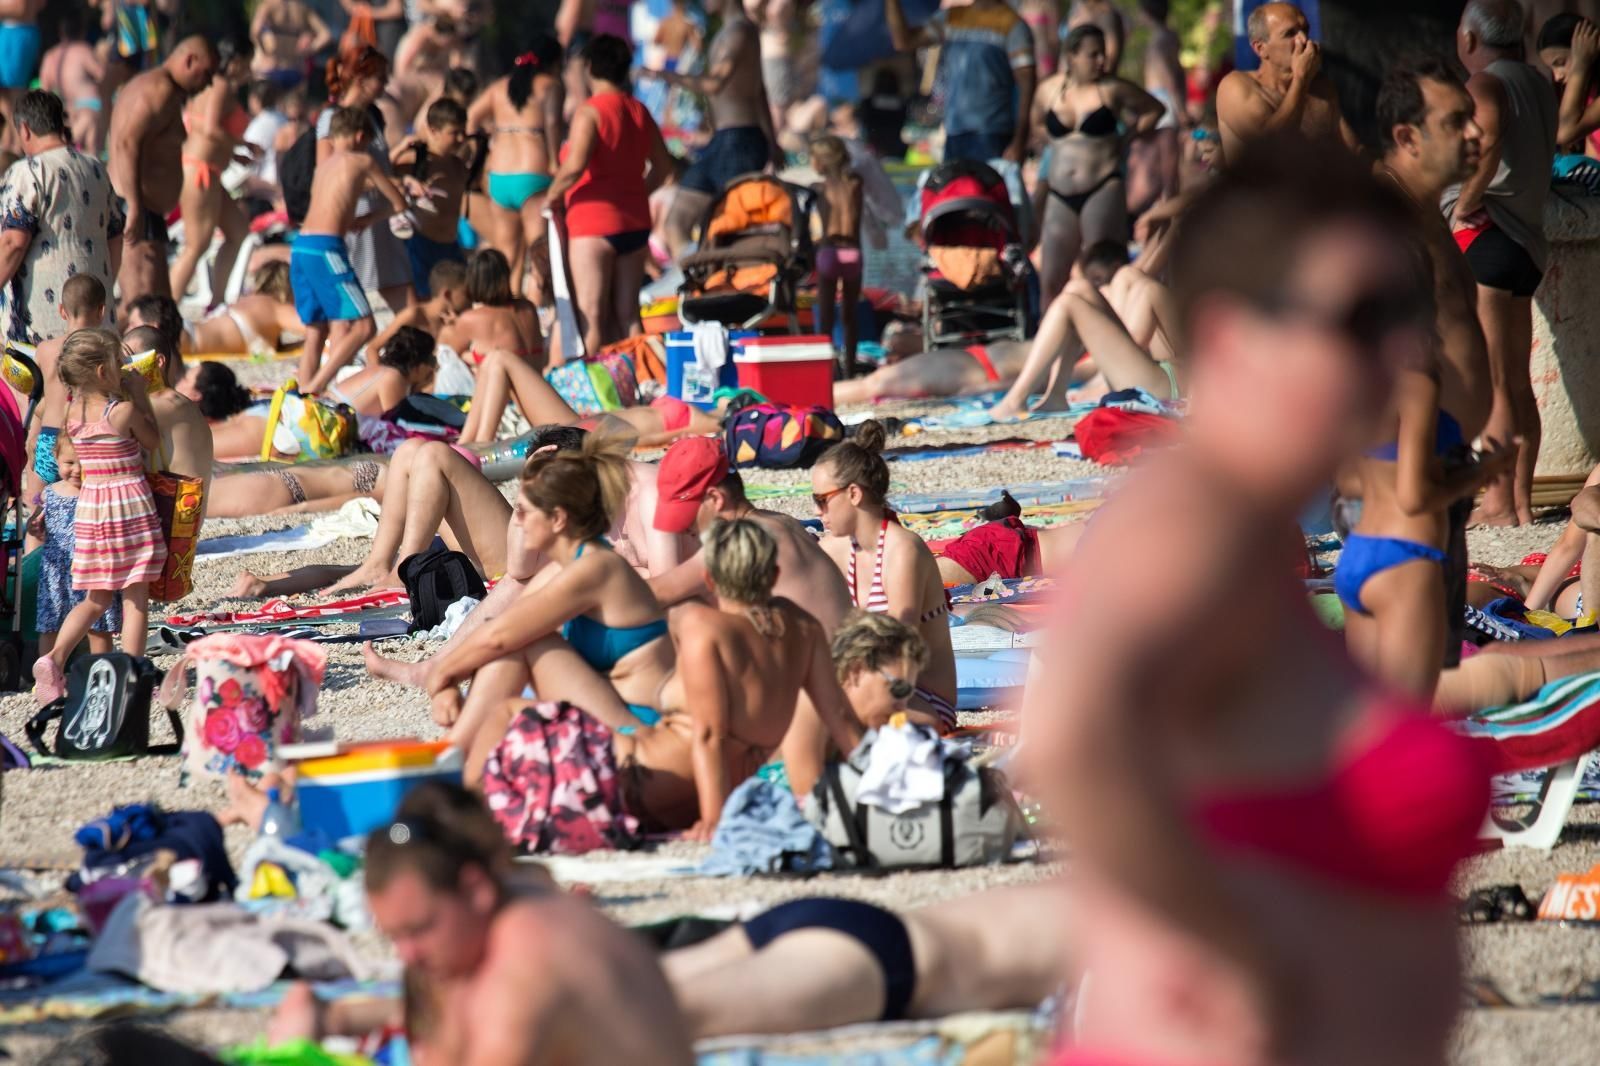 05.07.2015., Makarska -  Turisti uzivaju u kupanju, suncanju i sportskim aktivnostima na glavnoj makarskoj plazi. 
Photo: Davor Puklavec/PIXSELL